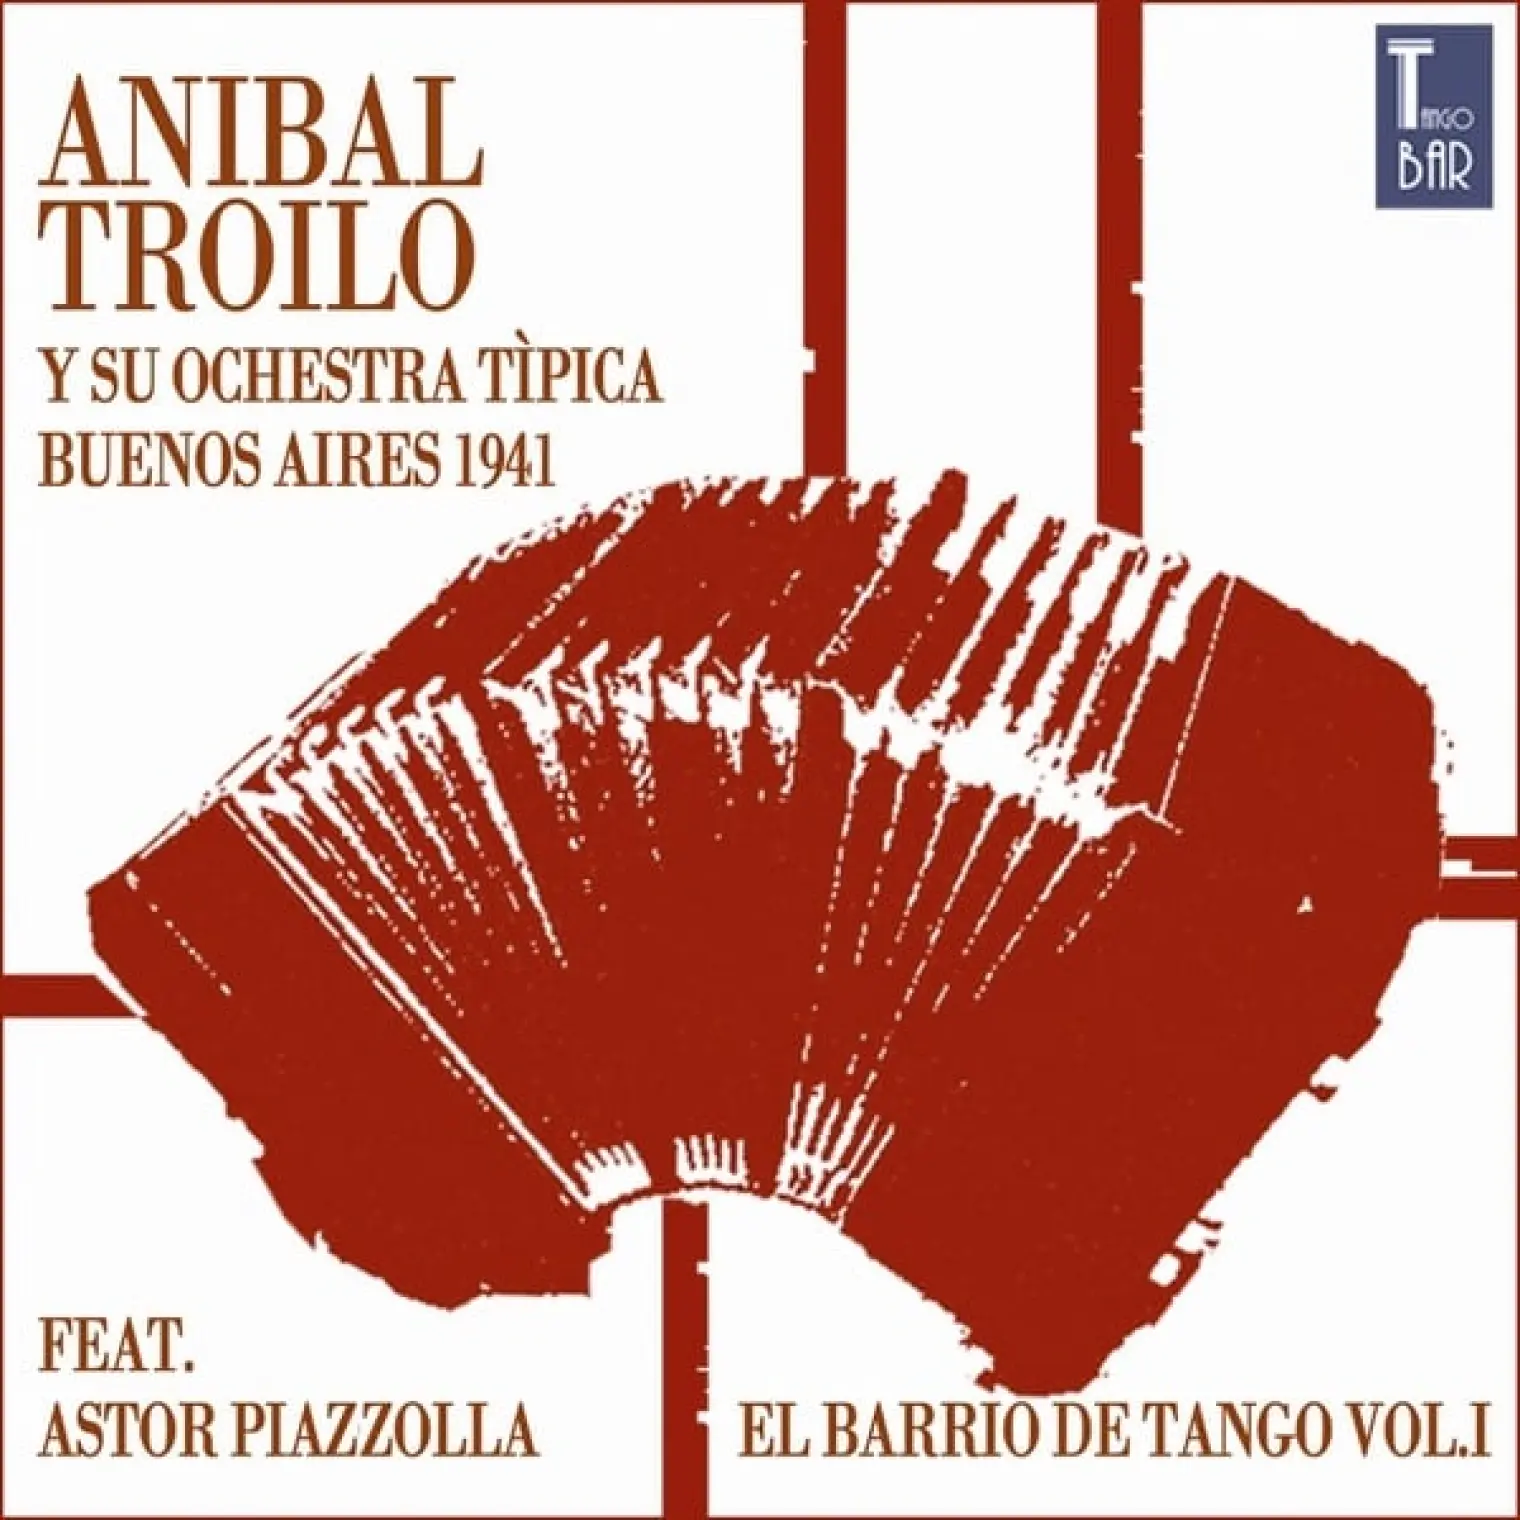 El Barrio de Tango, Vol. 1 (Die Ersten Aufnahmen von Astor Piazzolla) -  Anibal Troilo 